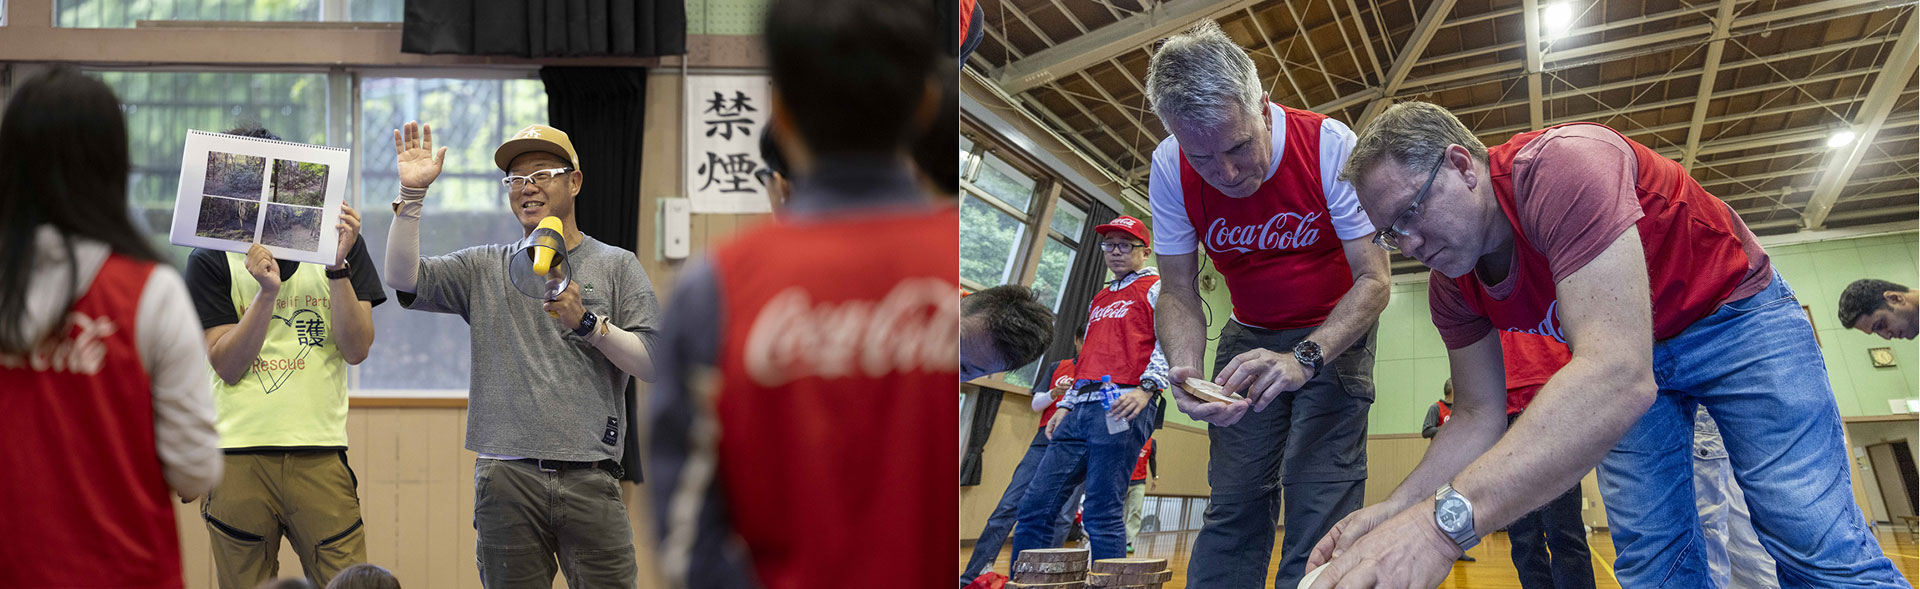 コカ・コーラ社員が木工作を体験している様子の写真